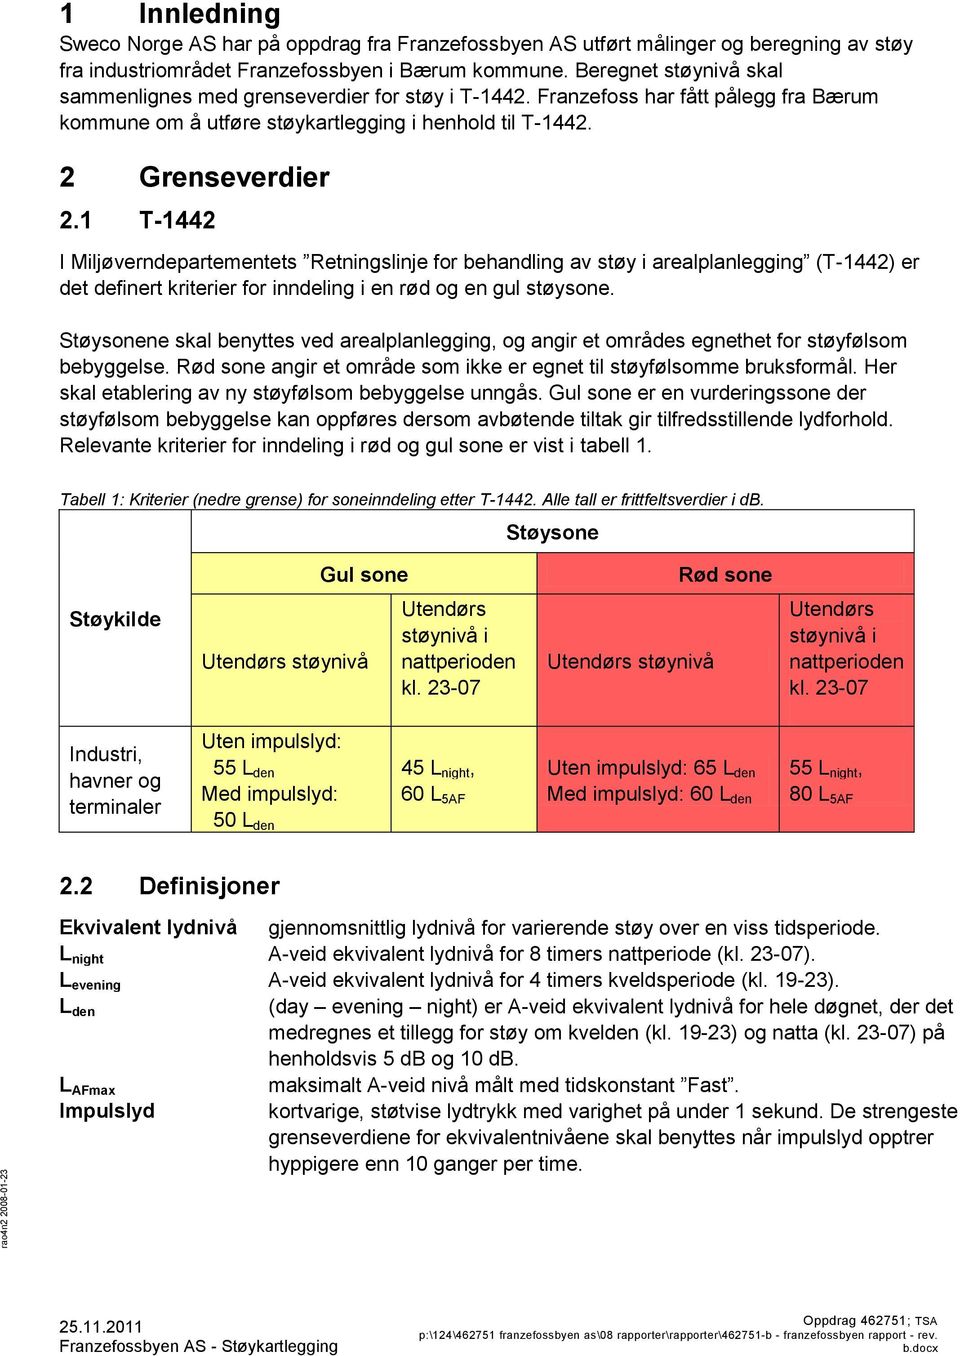 1 T-1442 I Miljøverndepartementets Retningslinje for behandling av støy i arealplanlegging (T-1442) er det definert kriterier for inndeling i en rød og en gul støysone.